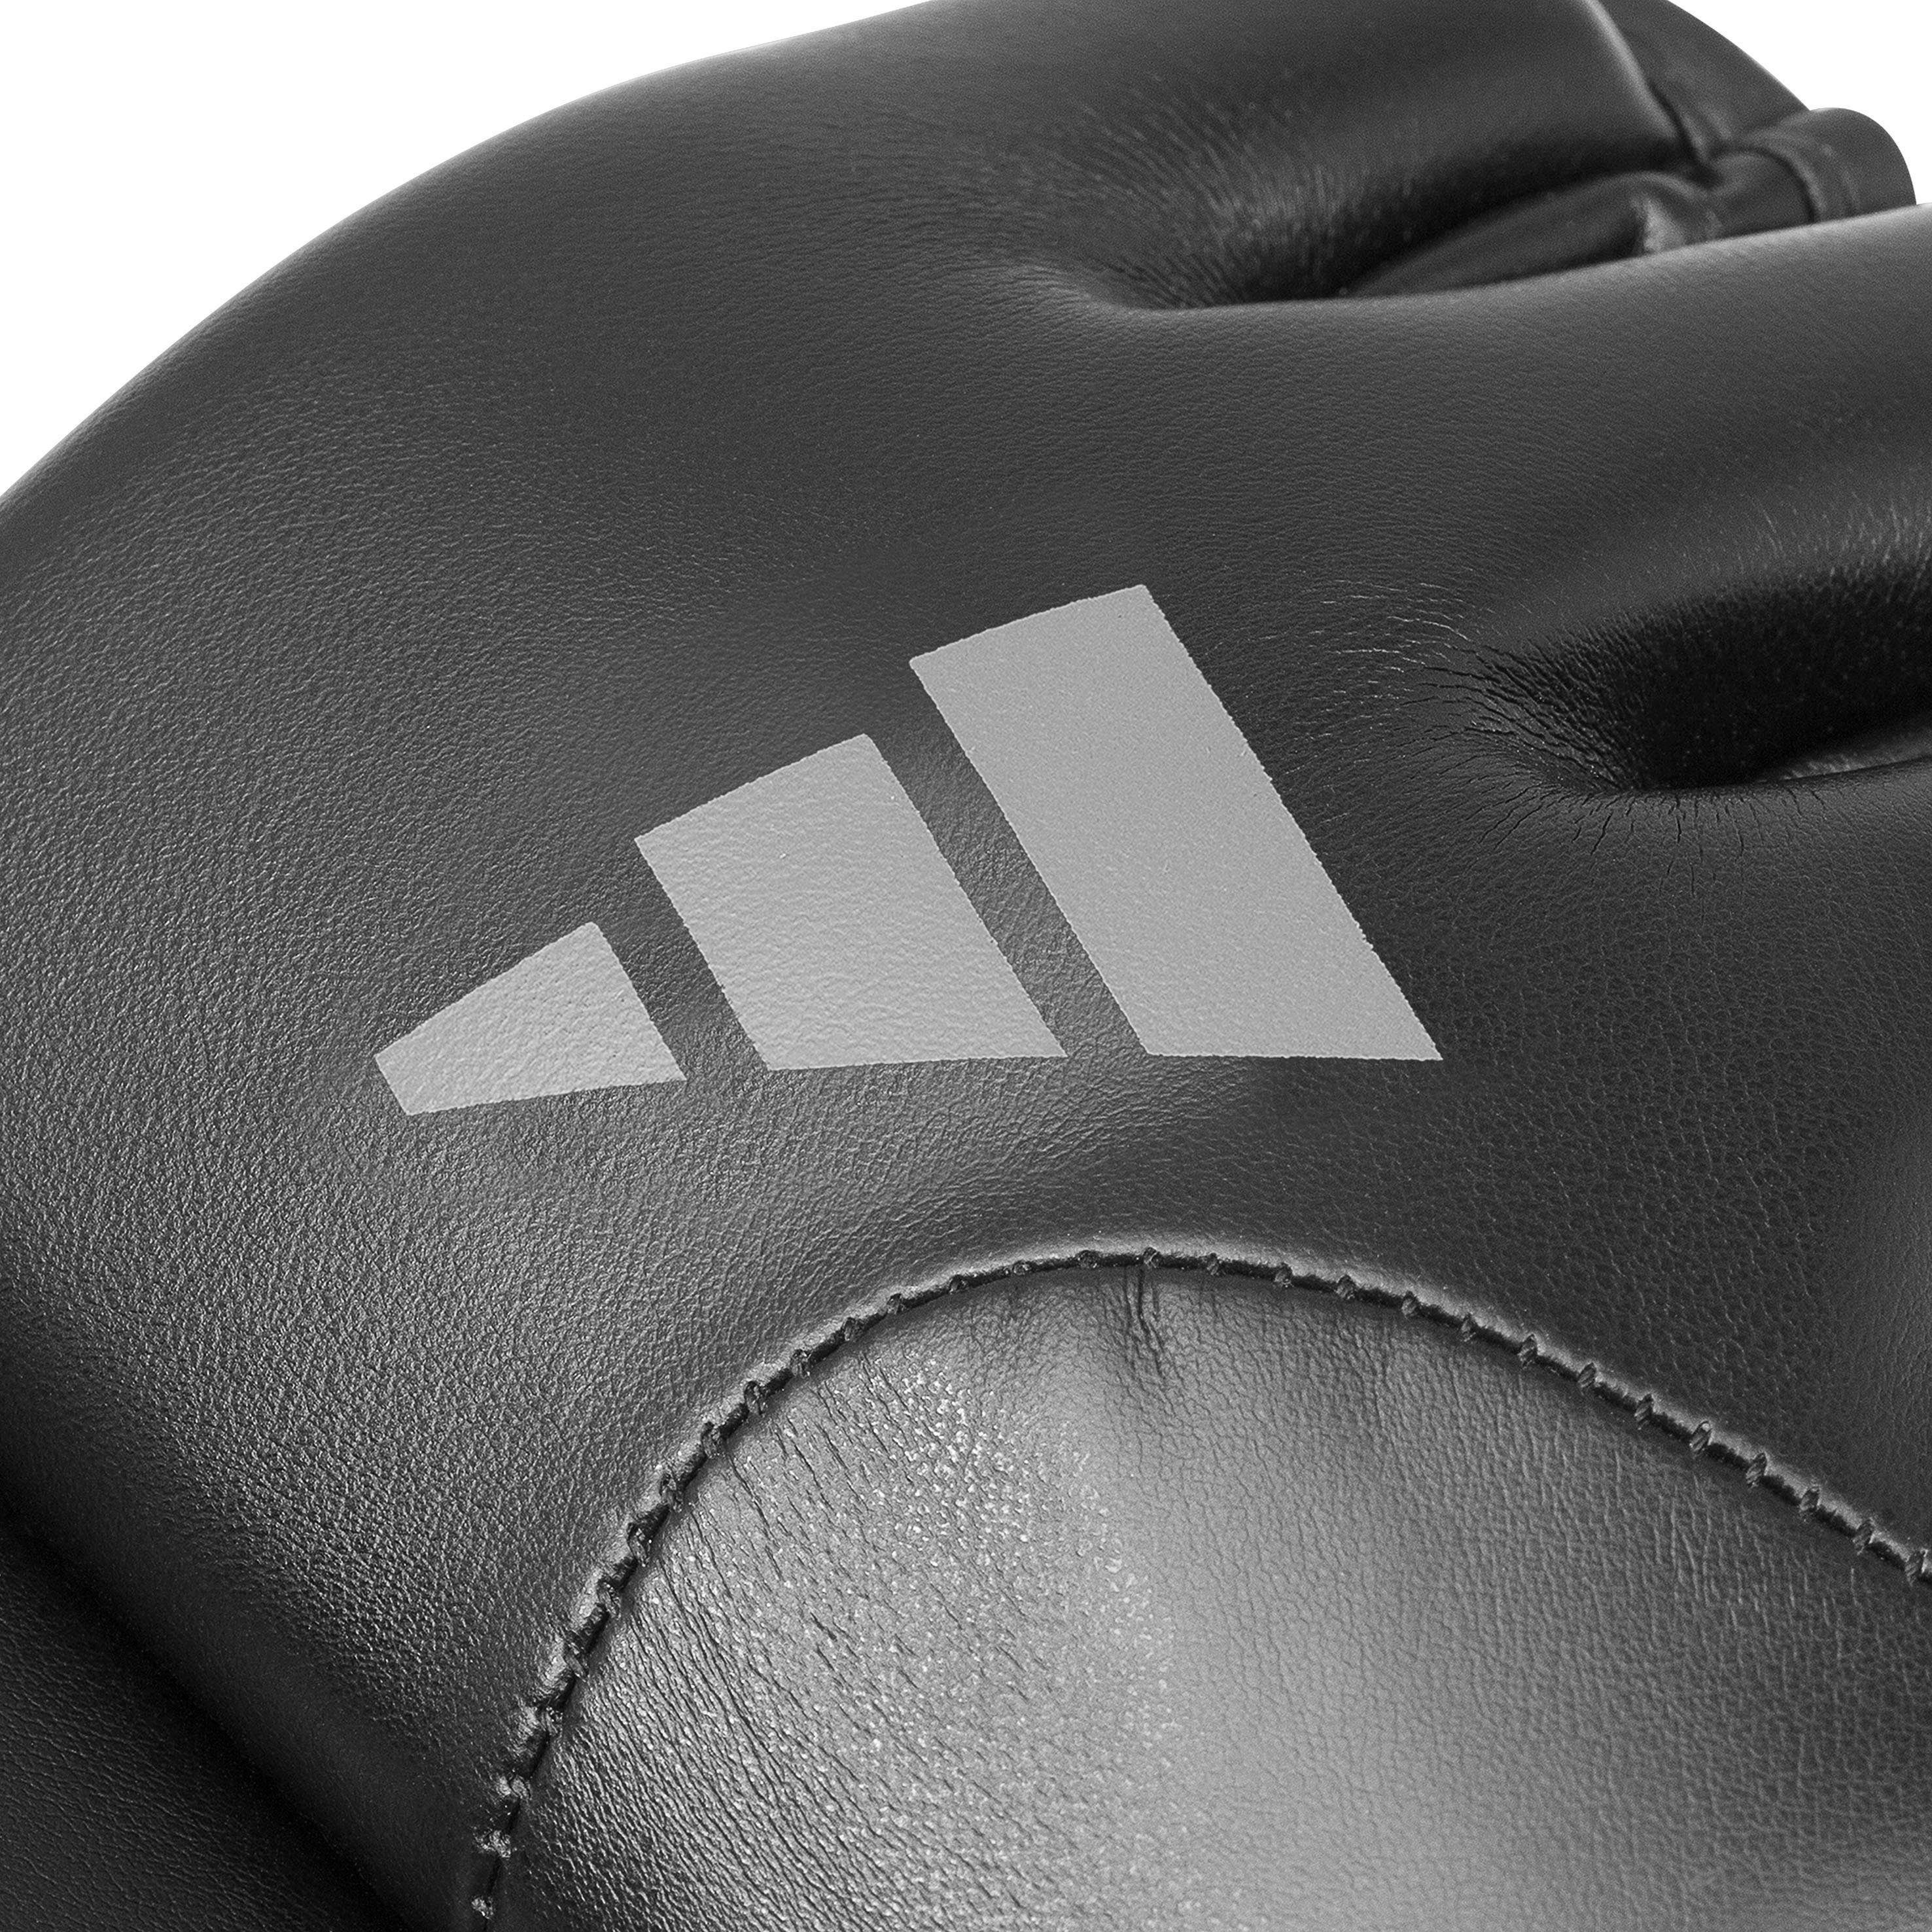 Performance Tilt Speed adidas MMA-Handschuhe G150